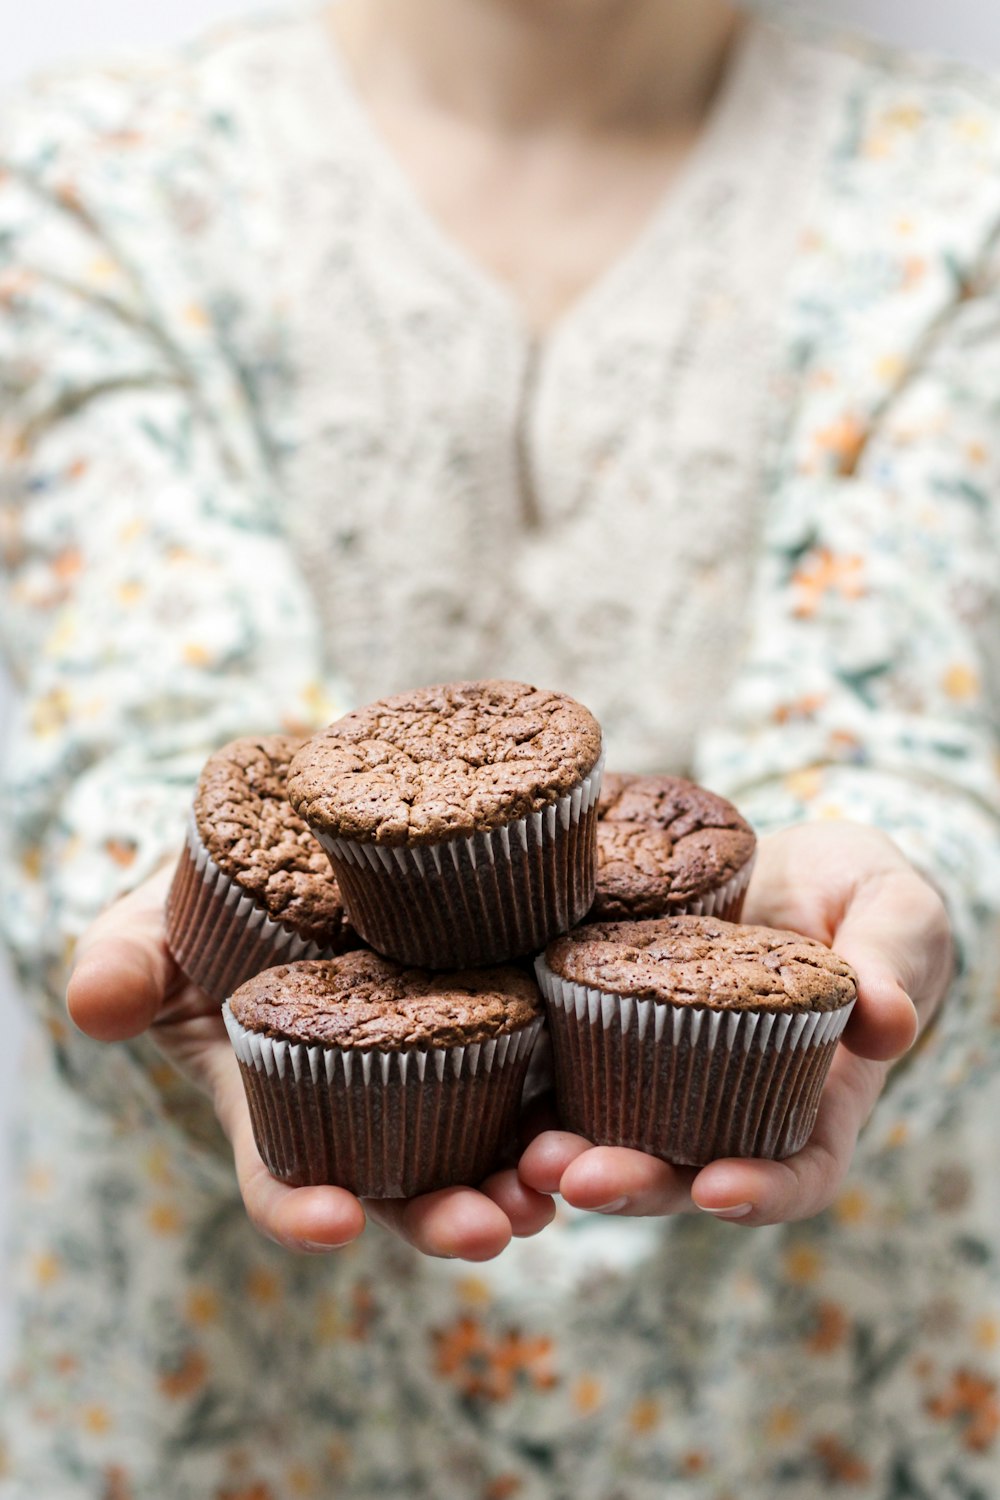 Flachfokusfotografie einer Person, die 5 Cupcakes hält